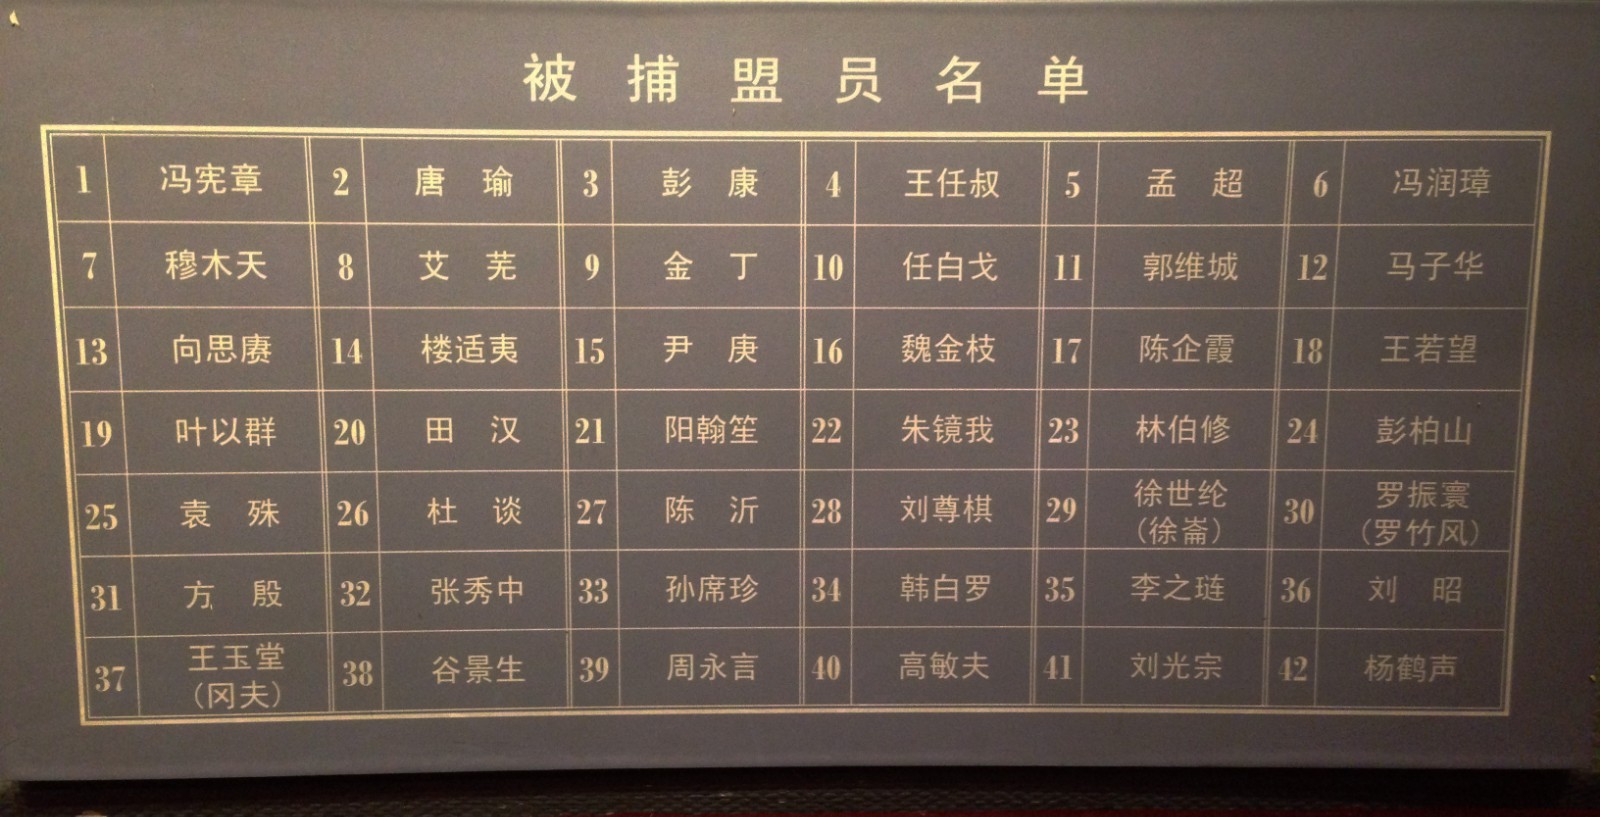 12.左联纪念馆中陈列的被捕盟员名单.JPG